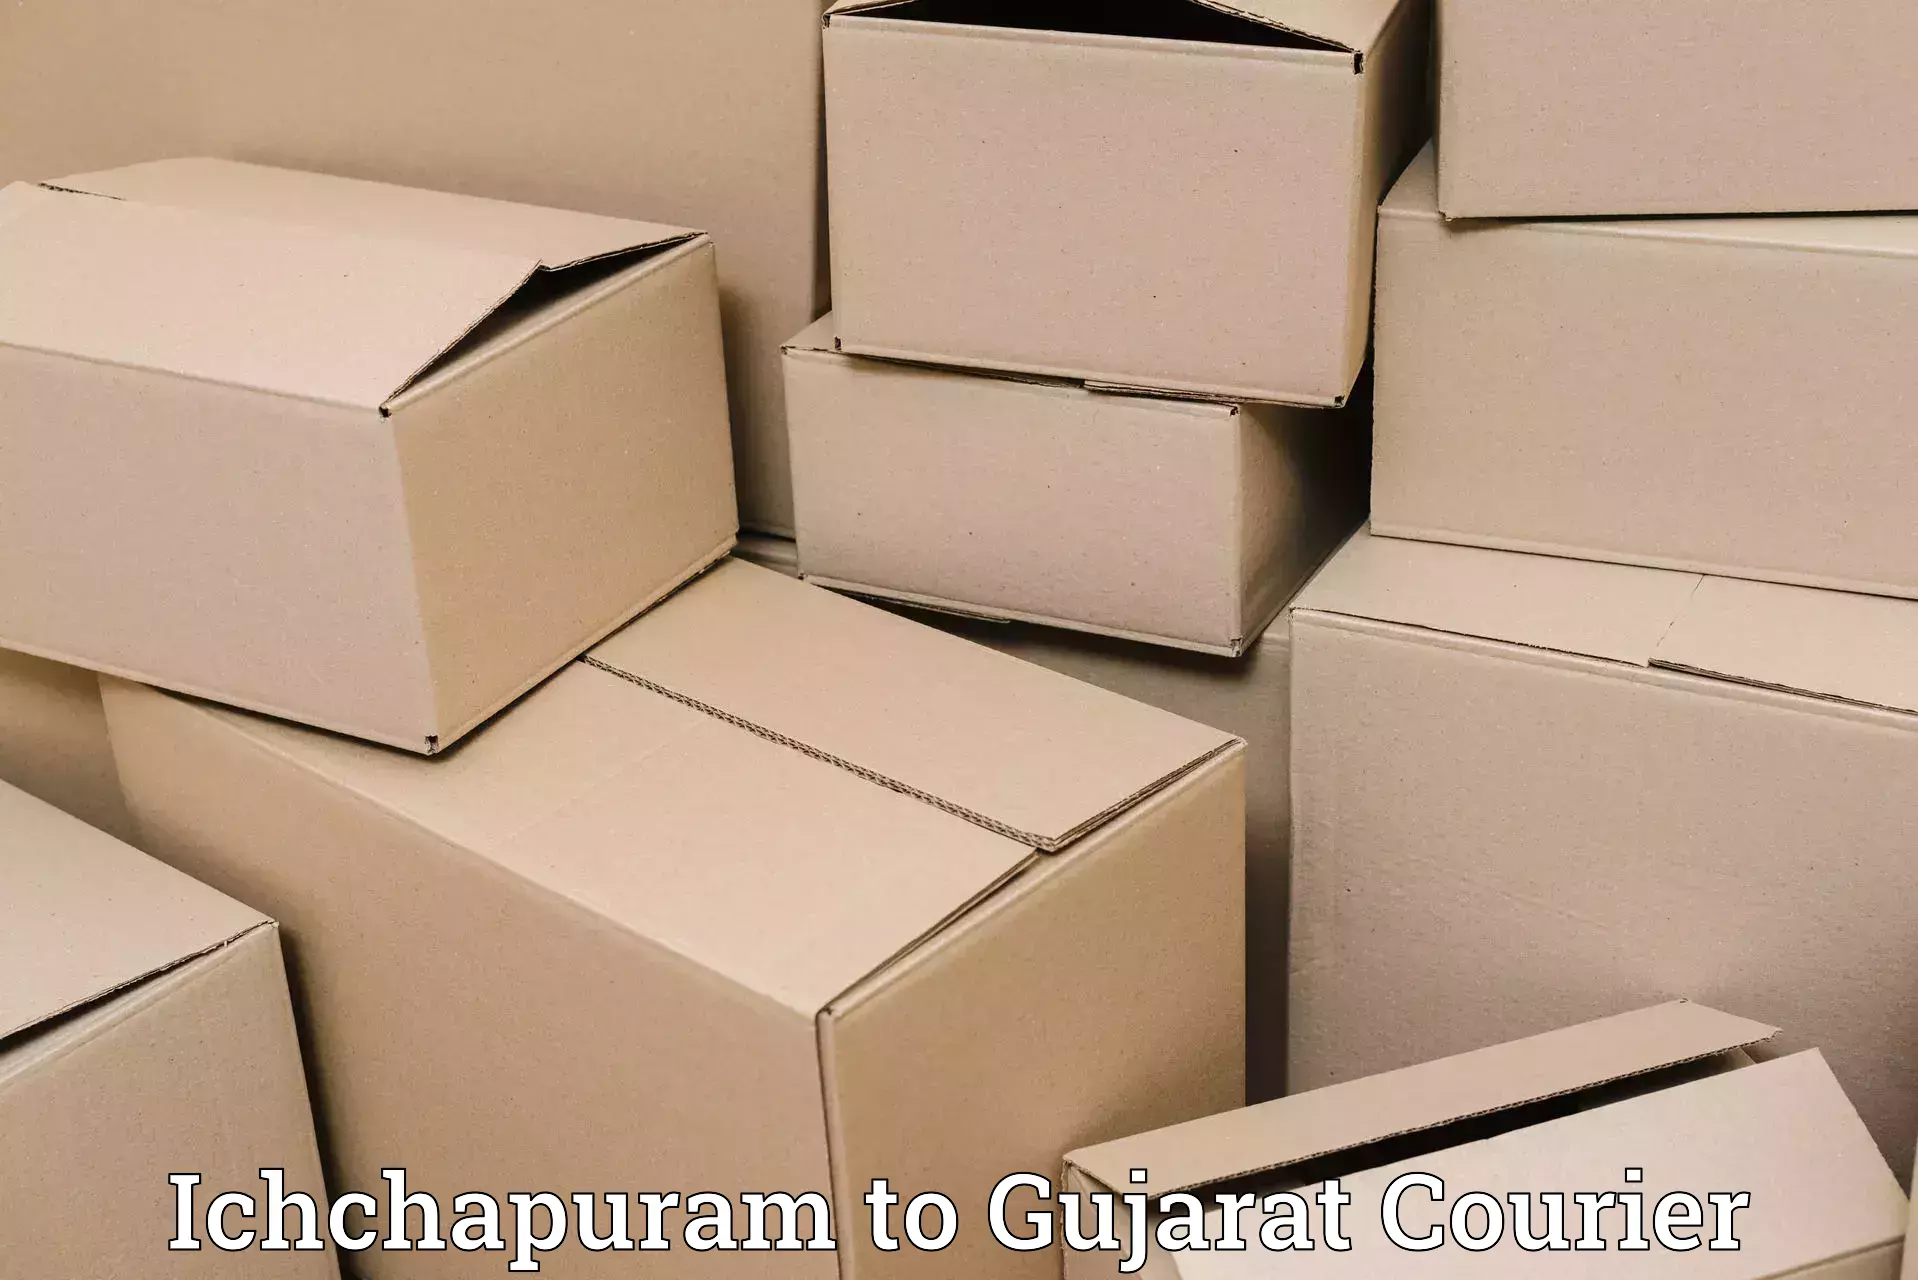 Round-the-clock parcel delivery Ichchapuram to Bhatiya